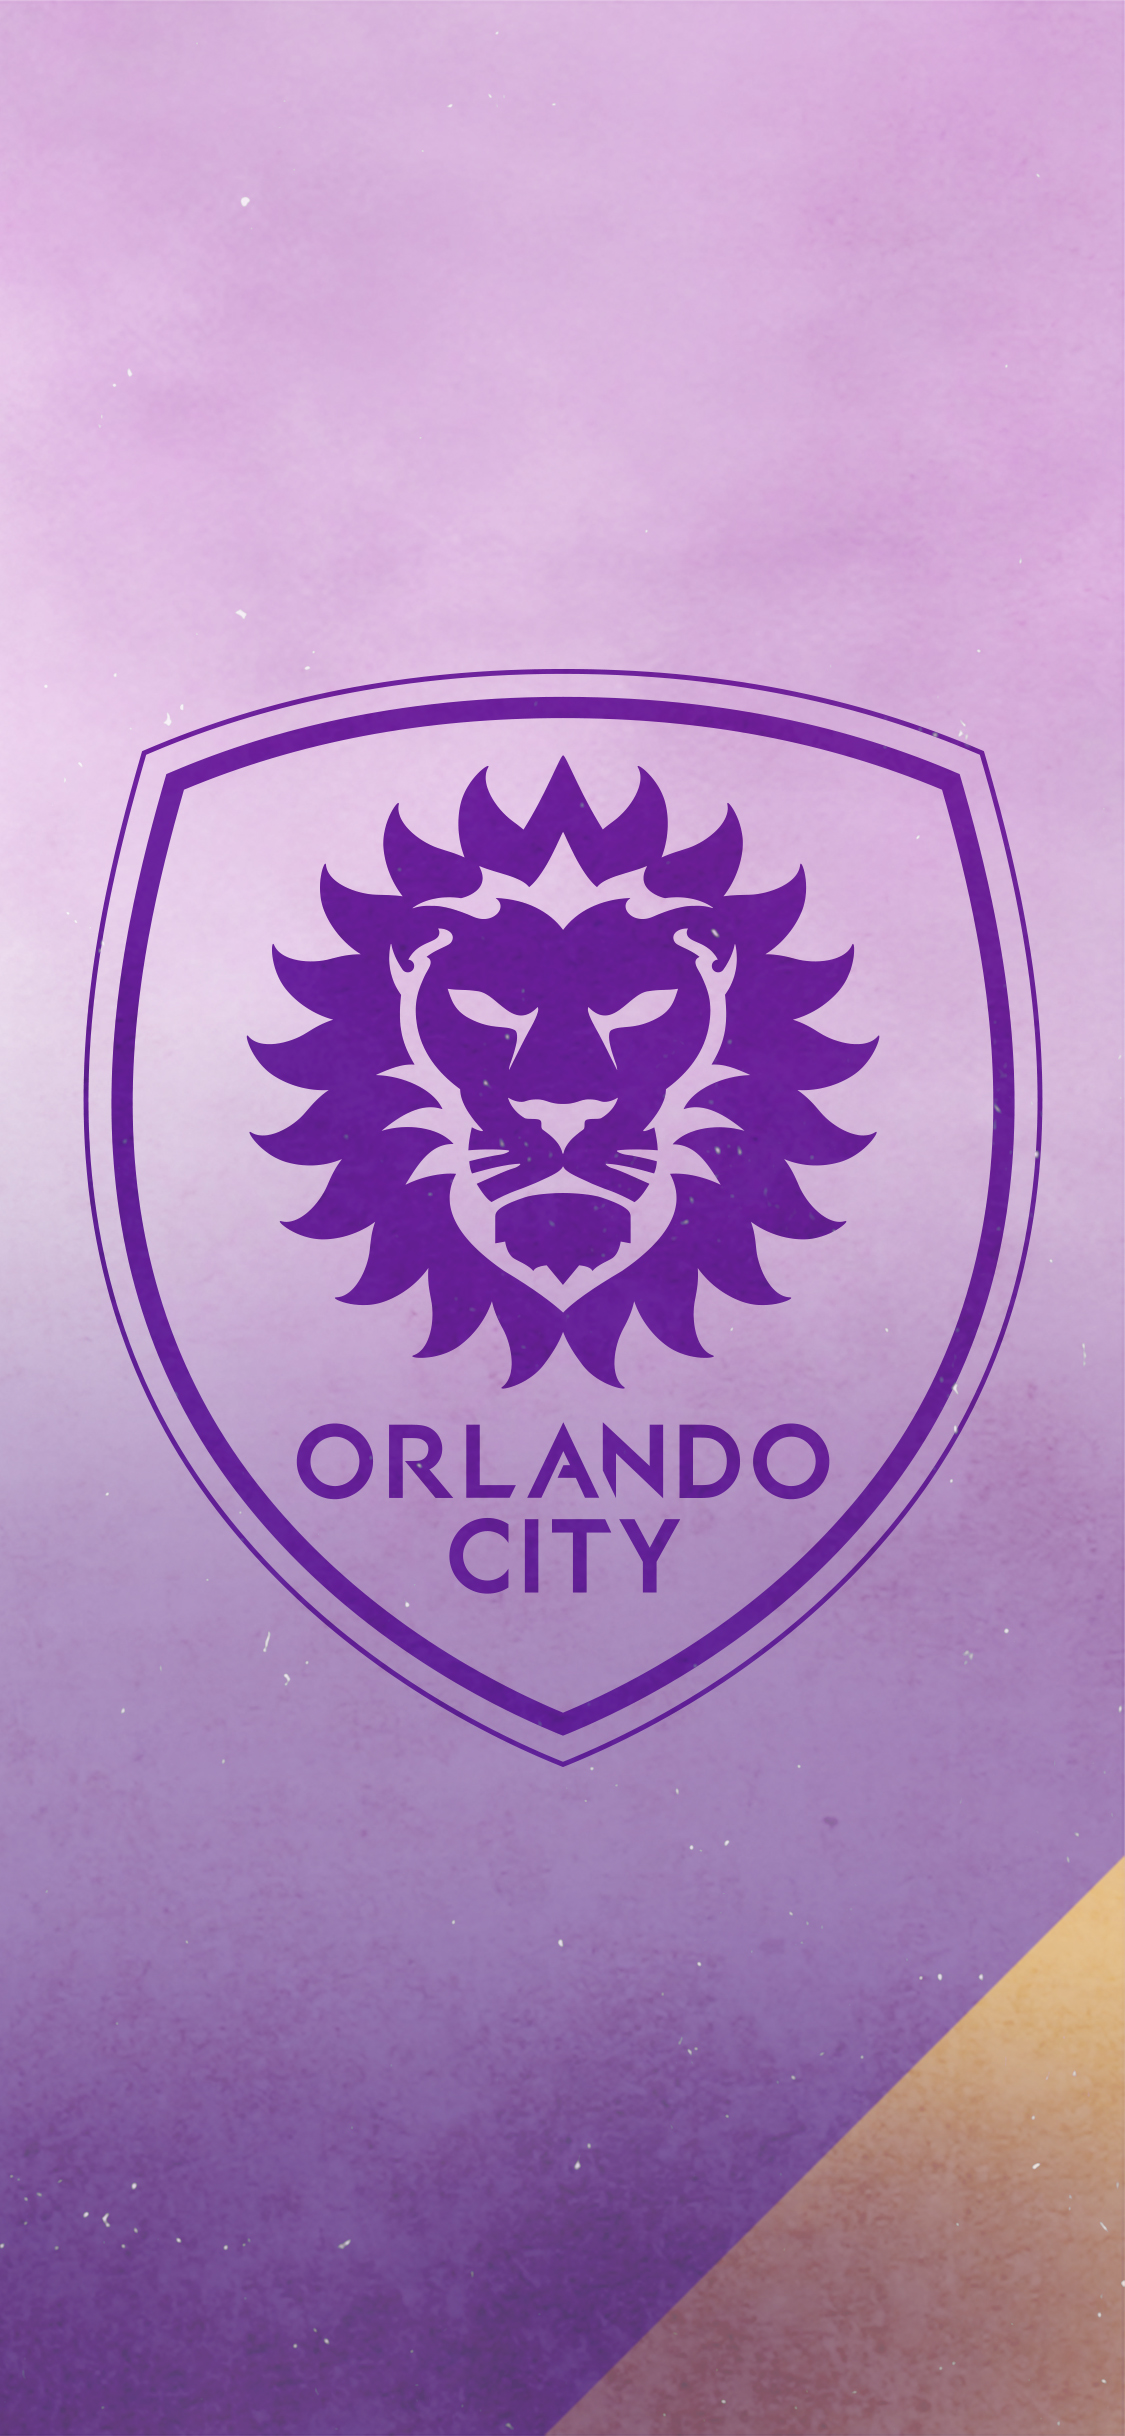 Downloads. Orlando City Soccer Club